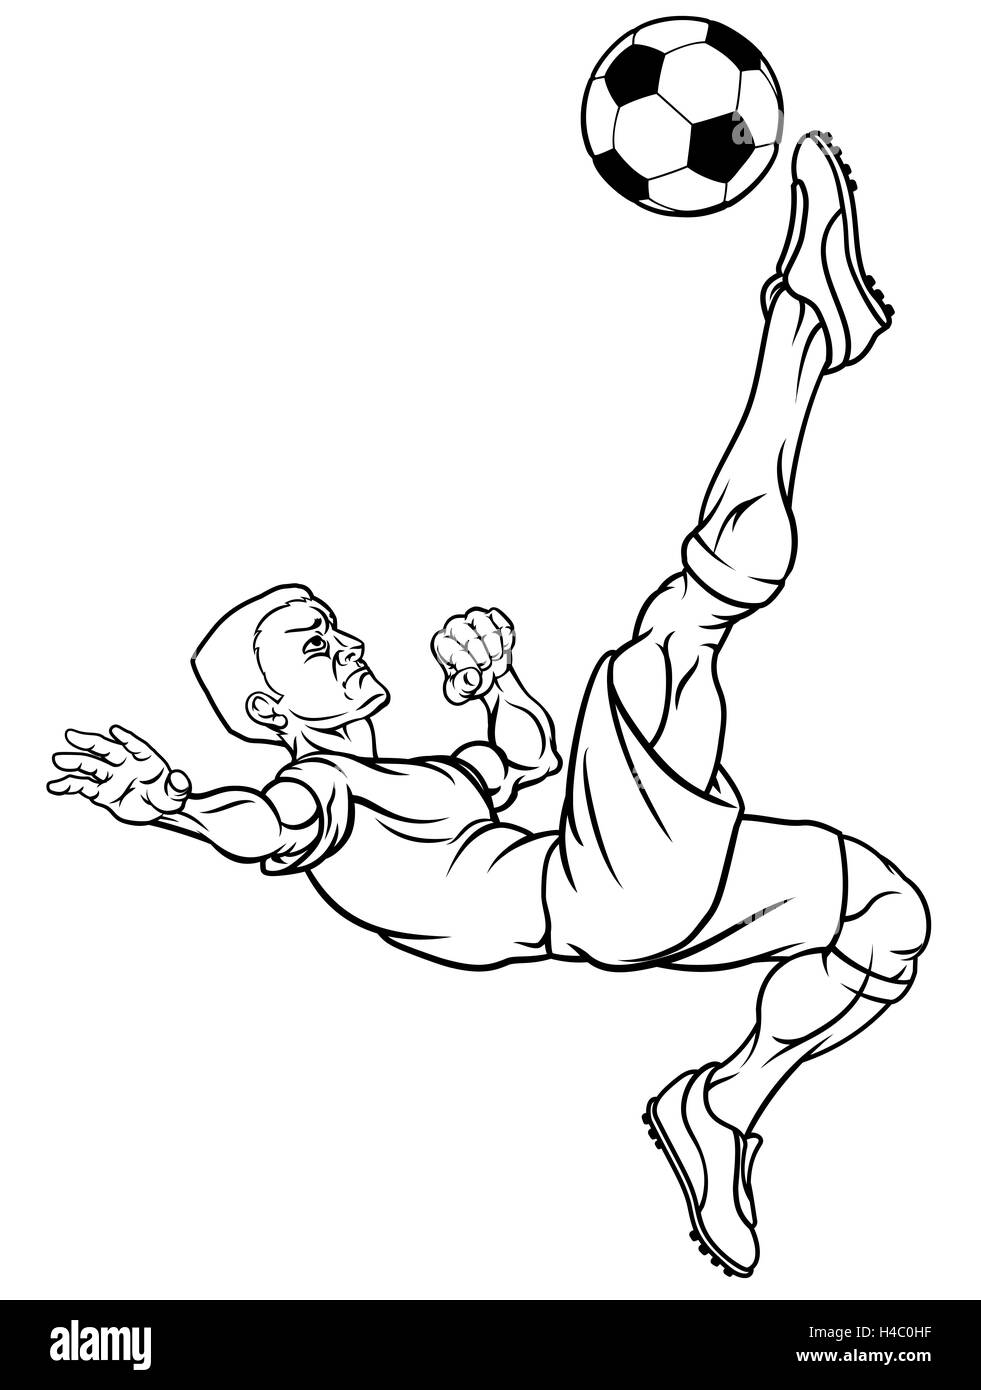 Eine Aktion verpackt Cartoon Fußball-Fußball-Spieler den Ball Stockfoto